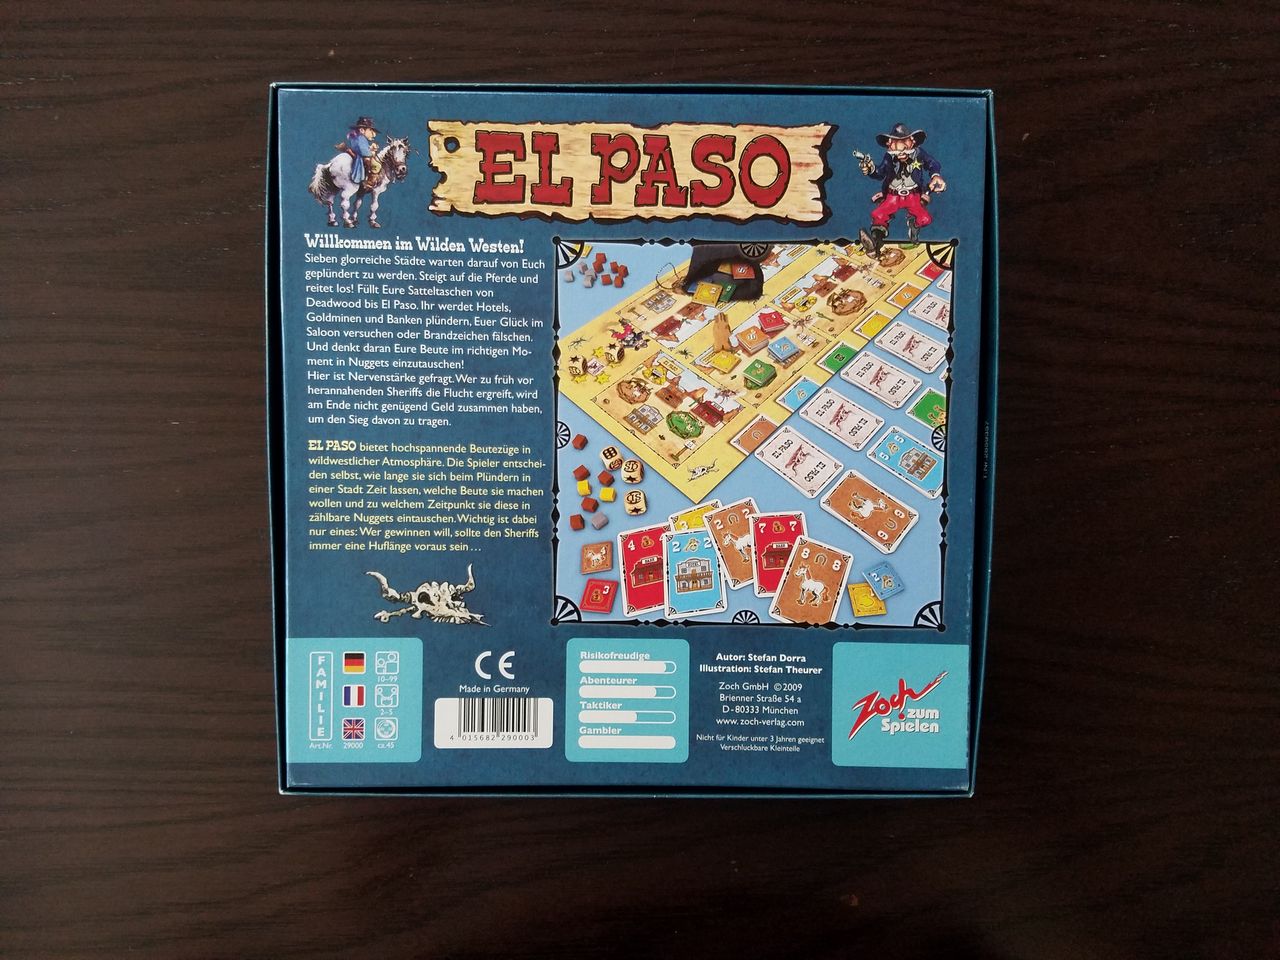 ボードゲーム レビュー 評価 エルパソ El Paso あそびつながるラボ おすすめのボードゲーム紹介ブログ